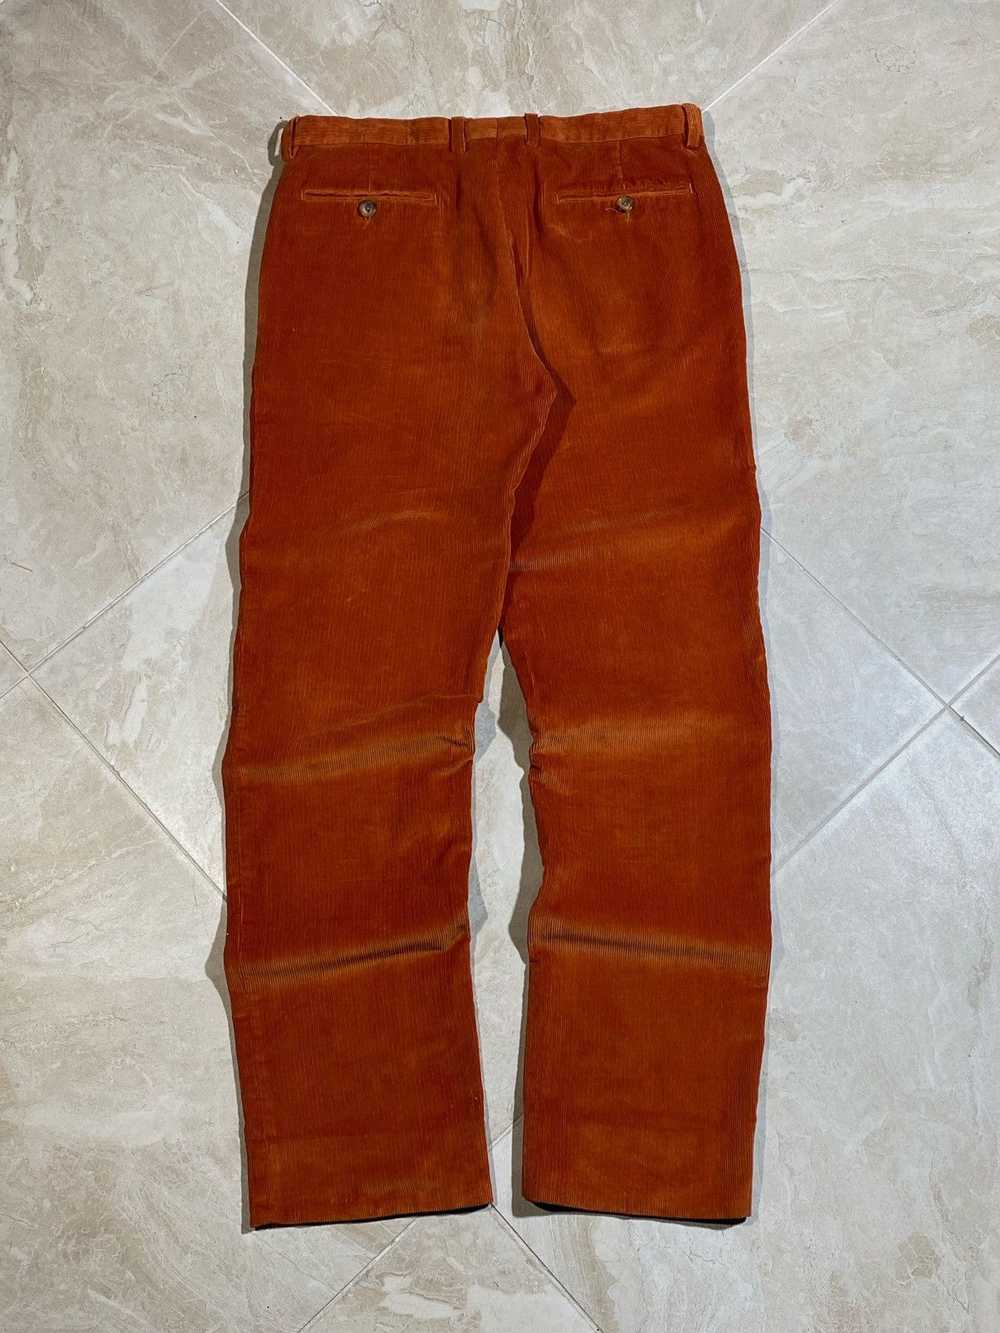 Etro Etro Men’s Cotton Corduroy Pants Orange Size… - image 12